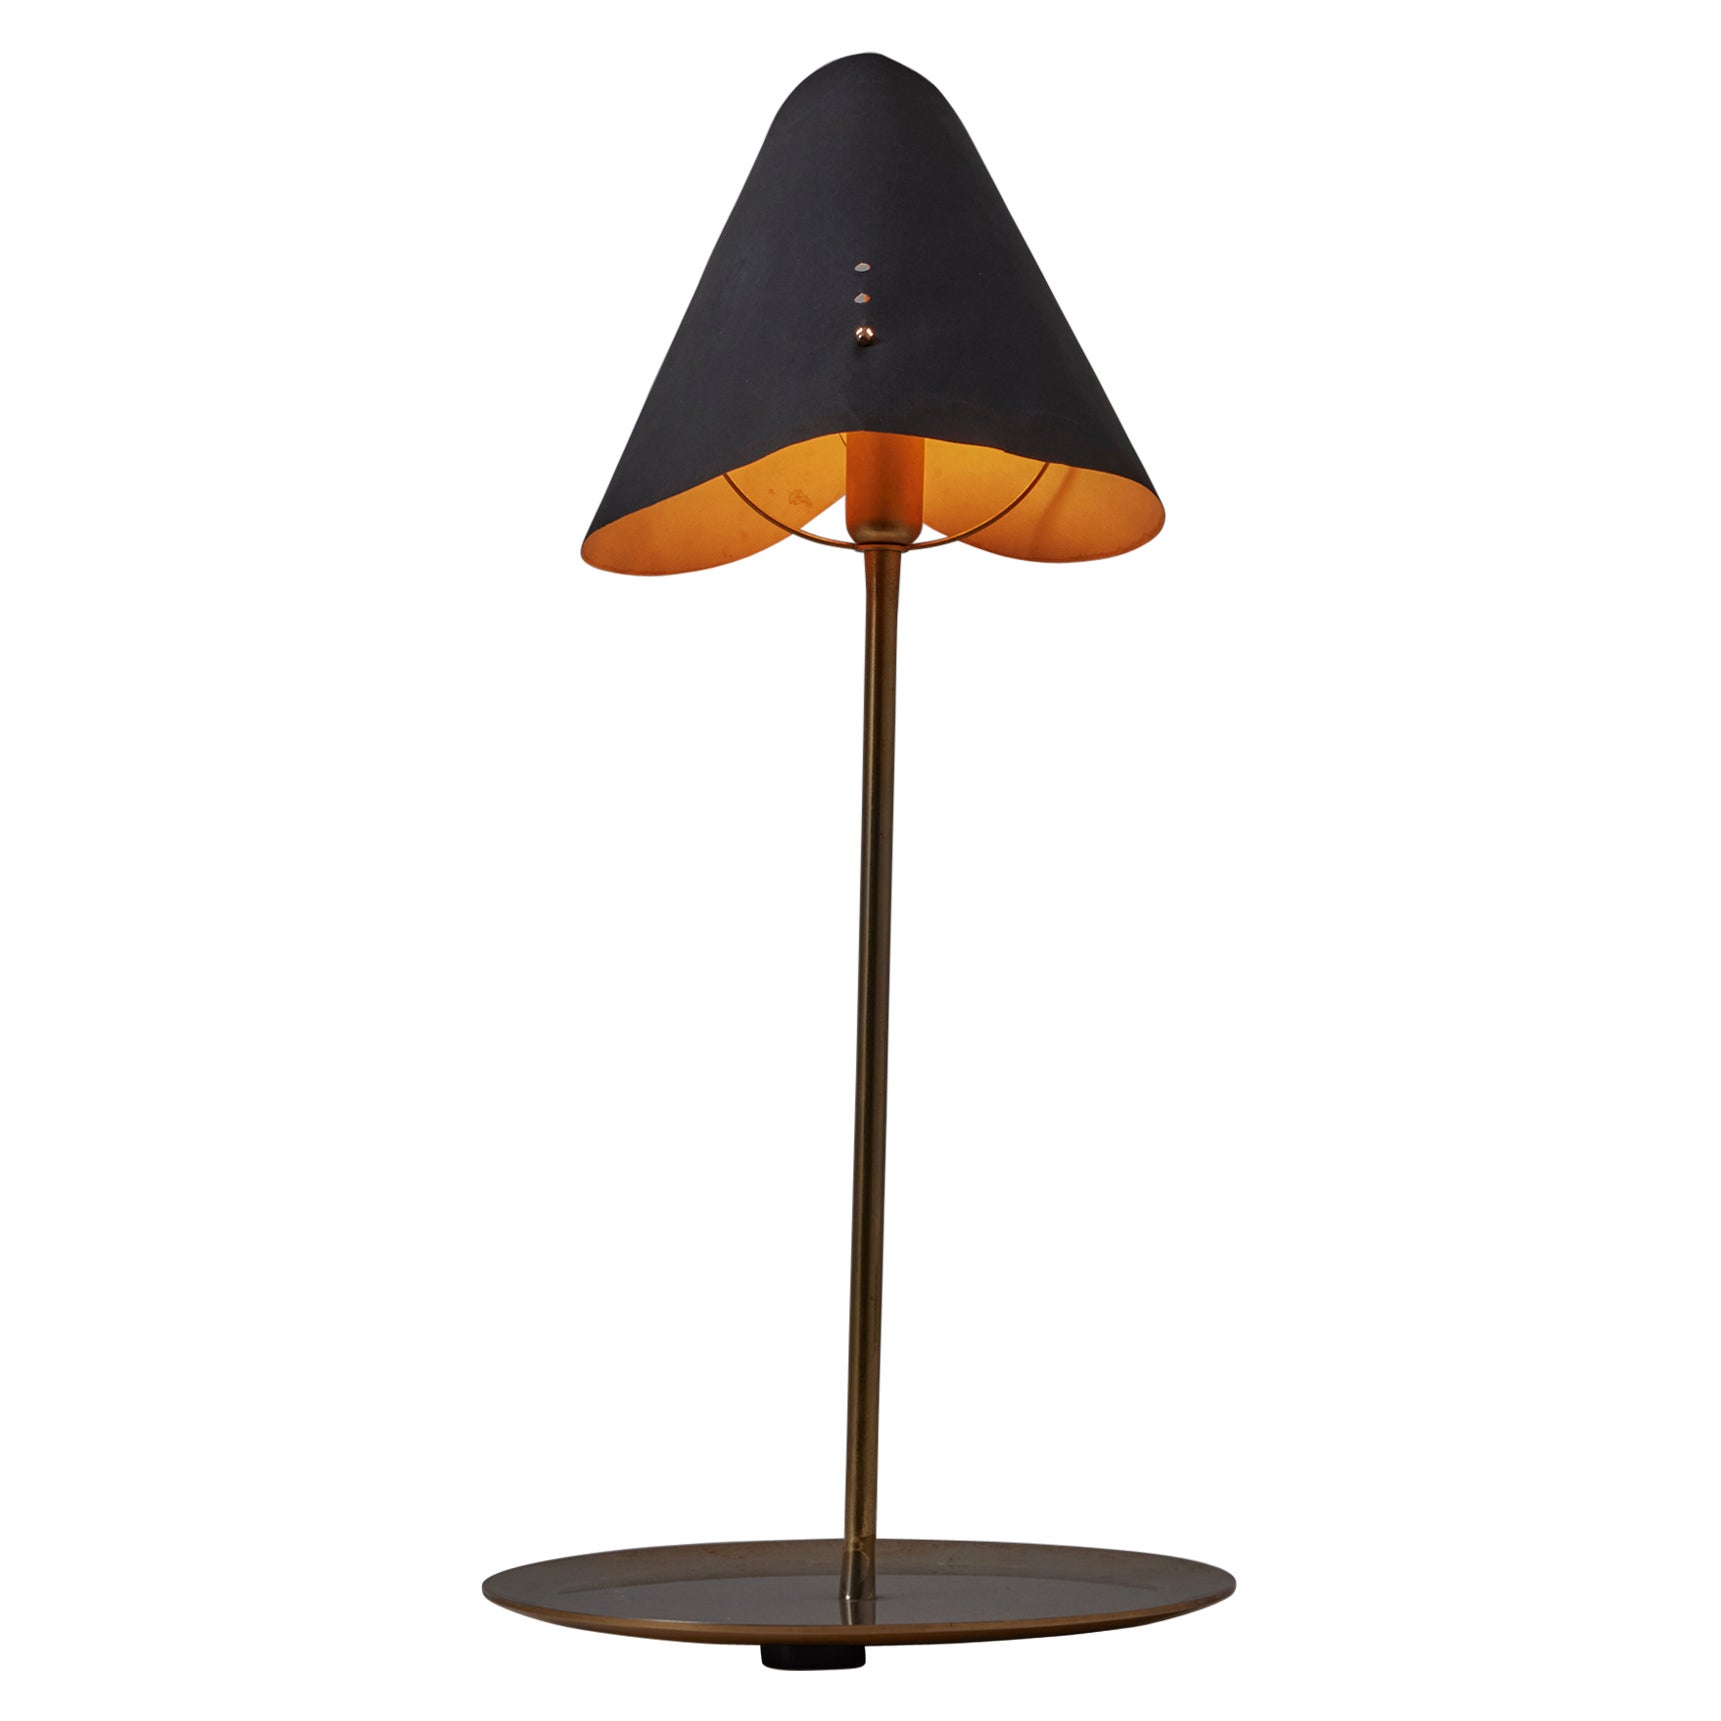 'Rue Férou' Table Lamp by Man Ray for Simon Gavina